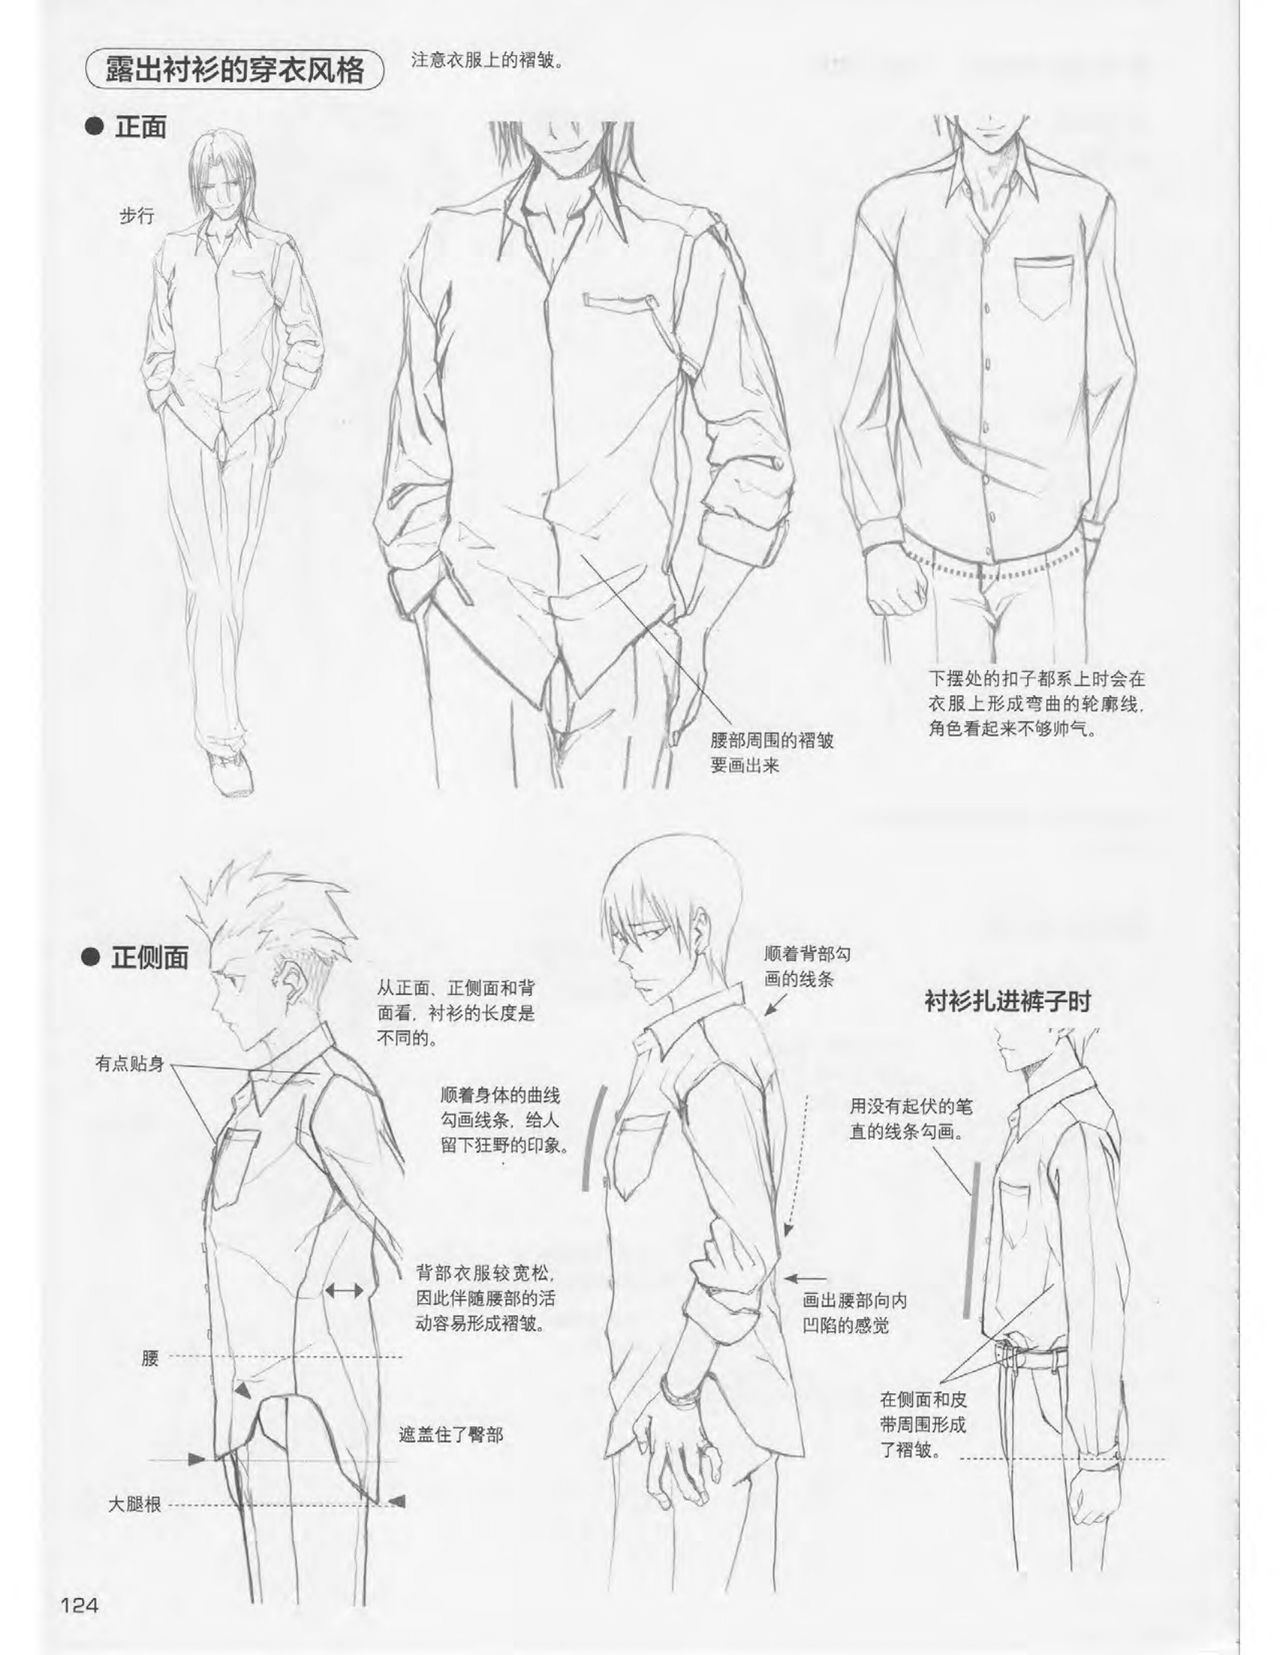 Japanese Manga Master Lecture 3: Lin Akira and Kakumaru Maru Talk About Glamorous Character Modeling 123